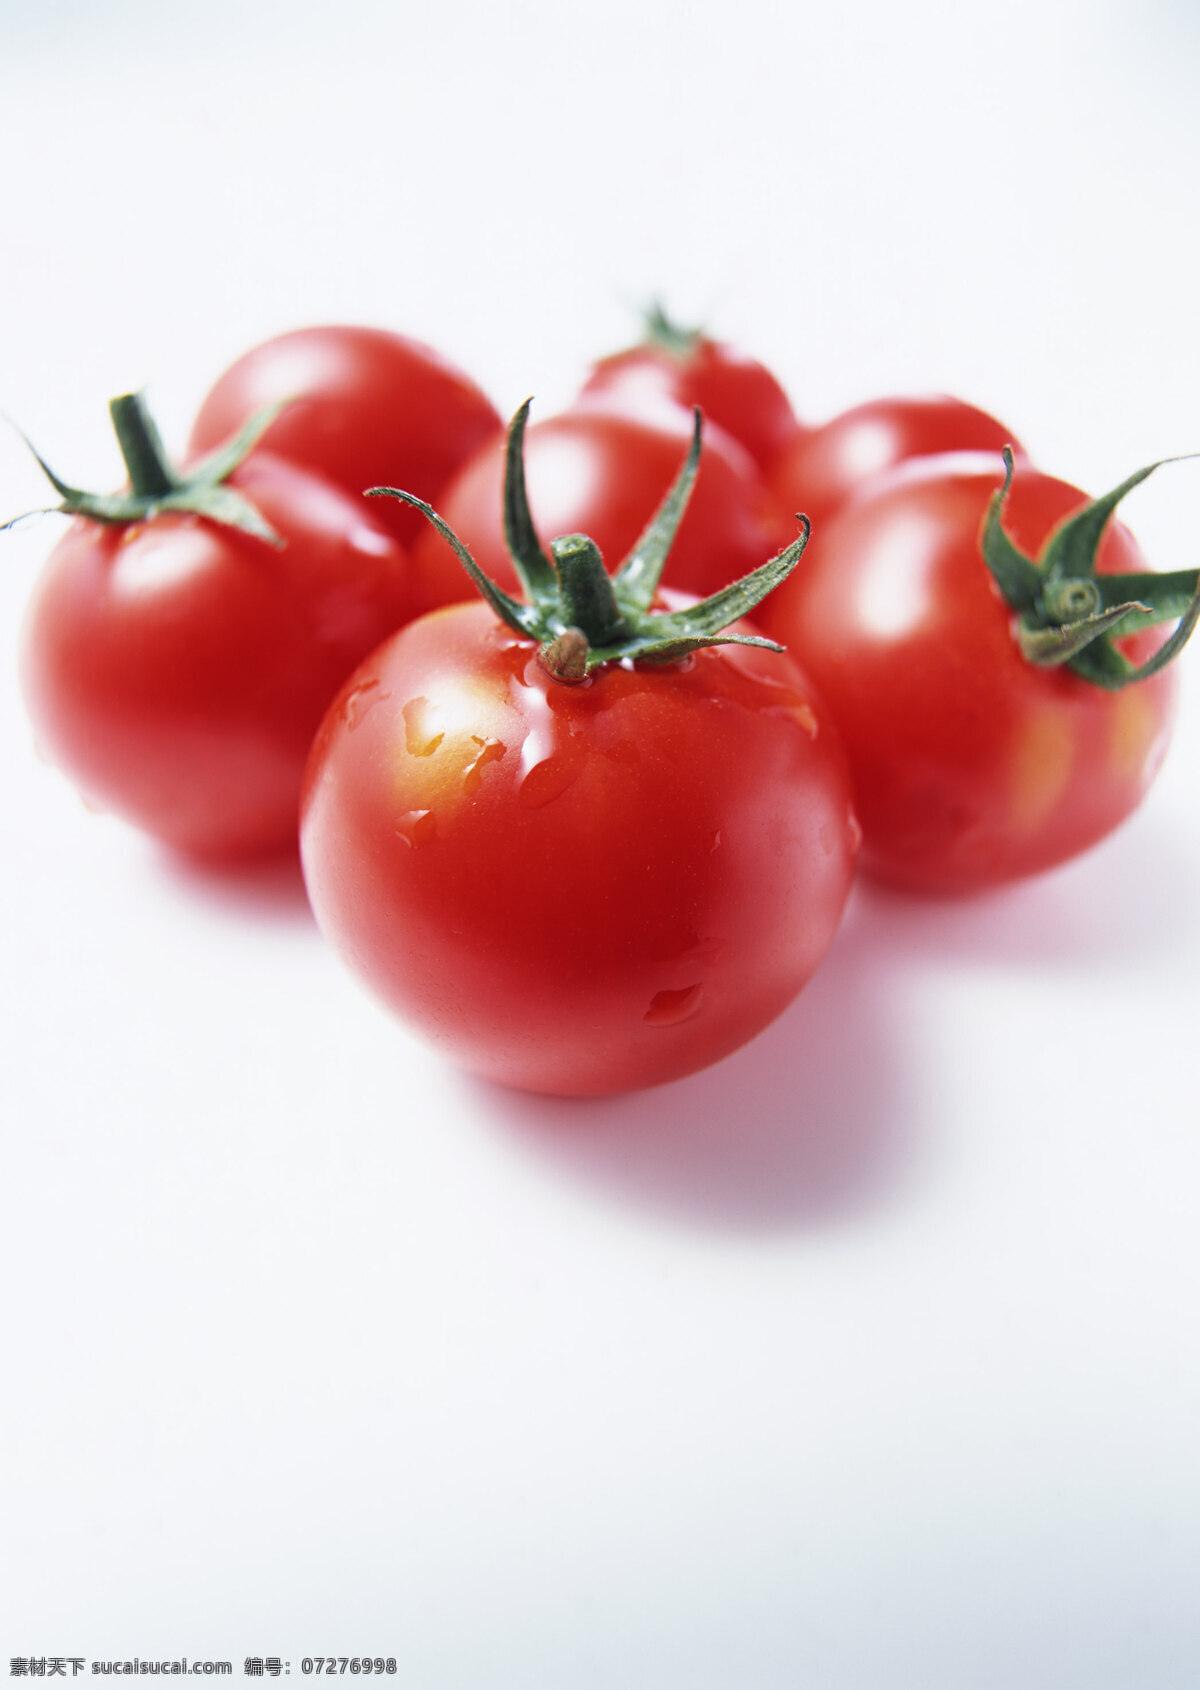 新鲜 蕃茄 新鲜蔬菜 西红柿 农作物 绿色食品 农业 摄影图 高清图片 蔬菜图片 餐饮美食